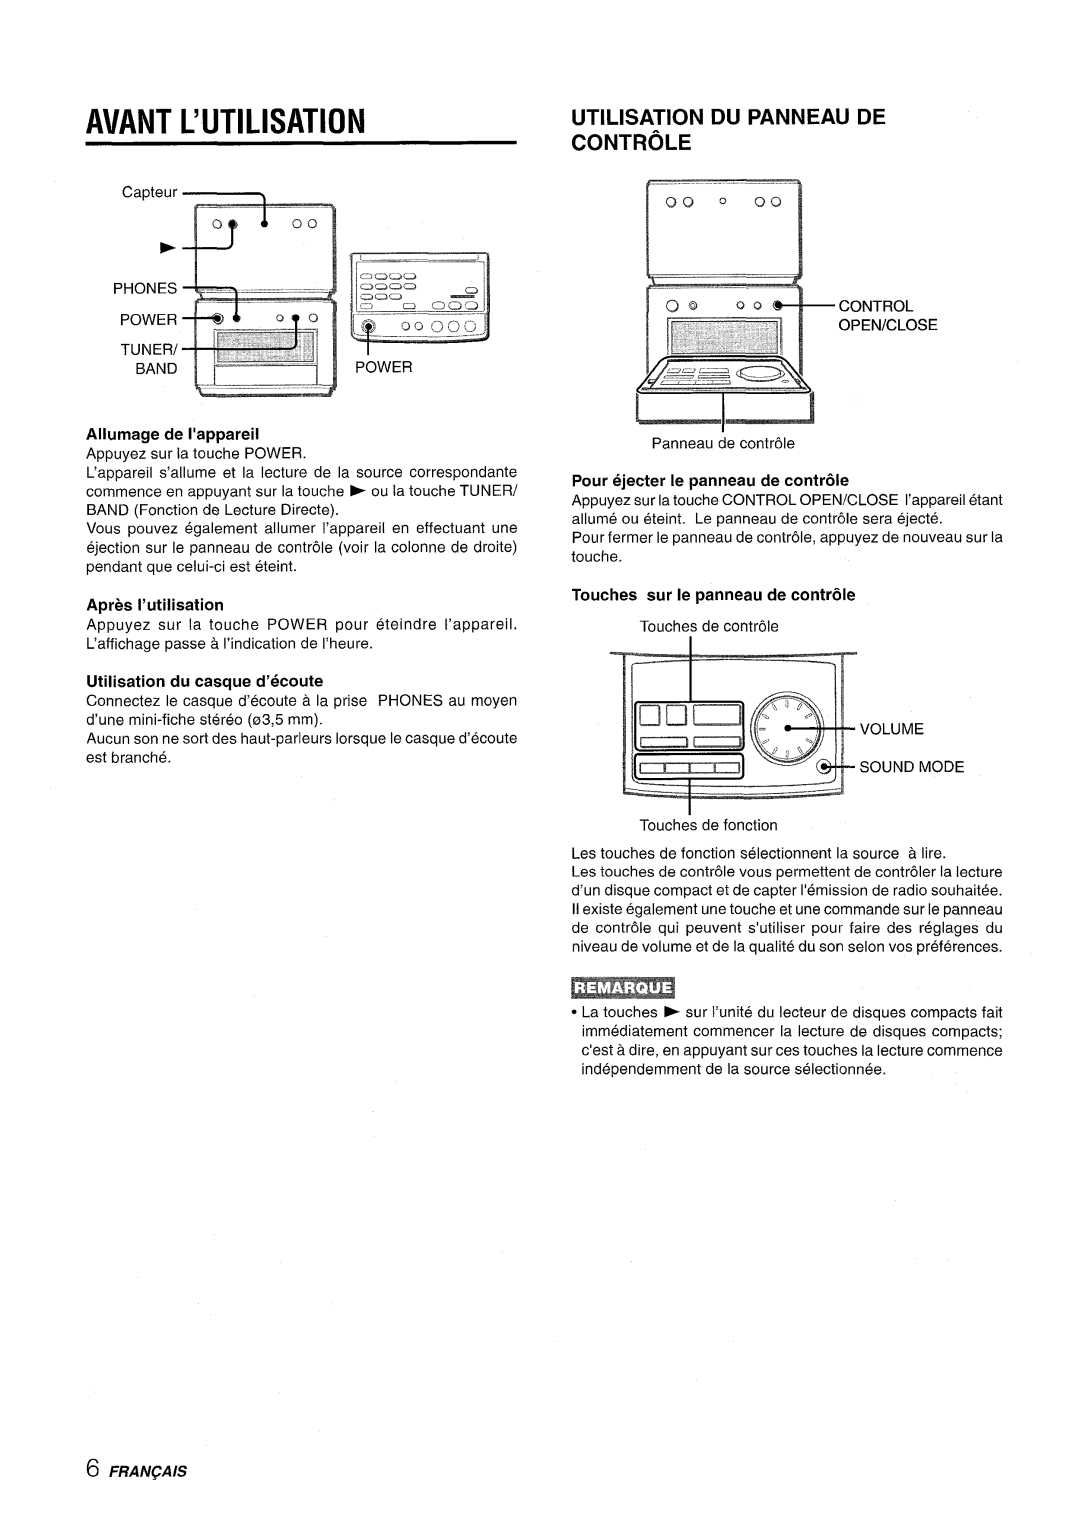 Aiwa XR-M70 manual Avant L’Utilisation, Utilisation Du Panneau De Controle, Allumage de I’appareil, Apres l’utilisation 